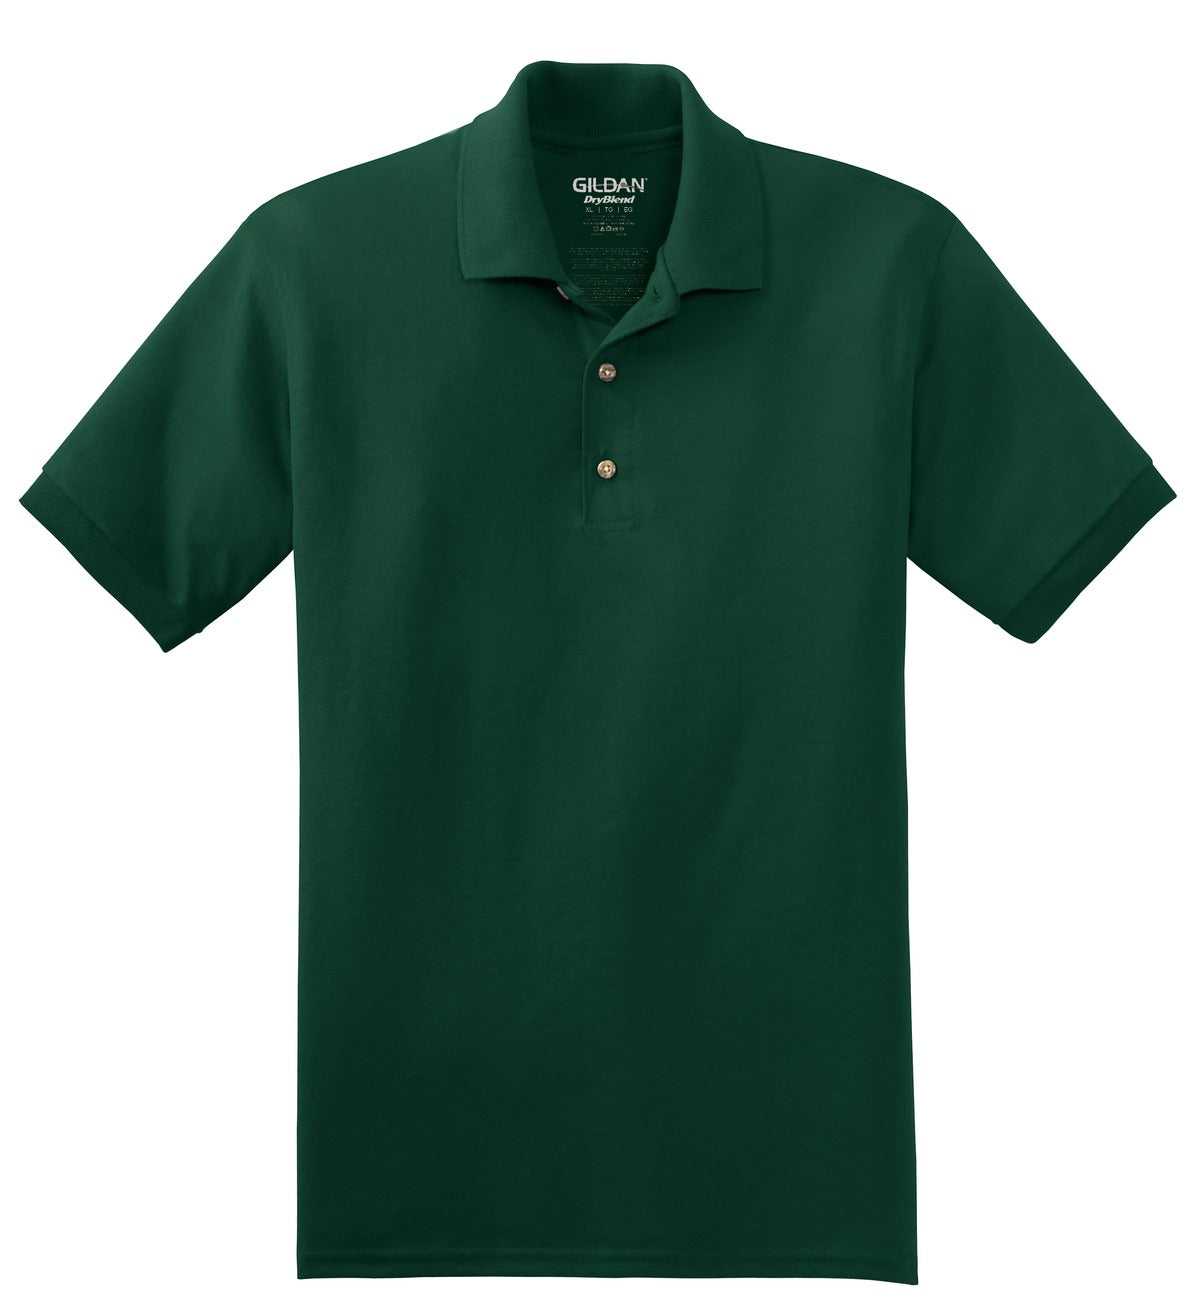 Gildan 8800 Dryblend 6-Ounce Jersey Knit Sport Shirt - Forest - HIT a Double